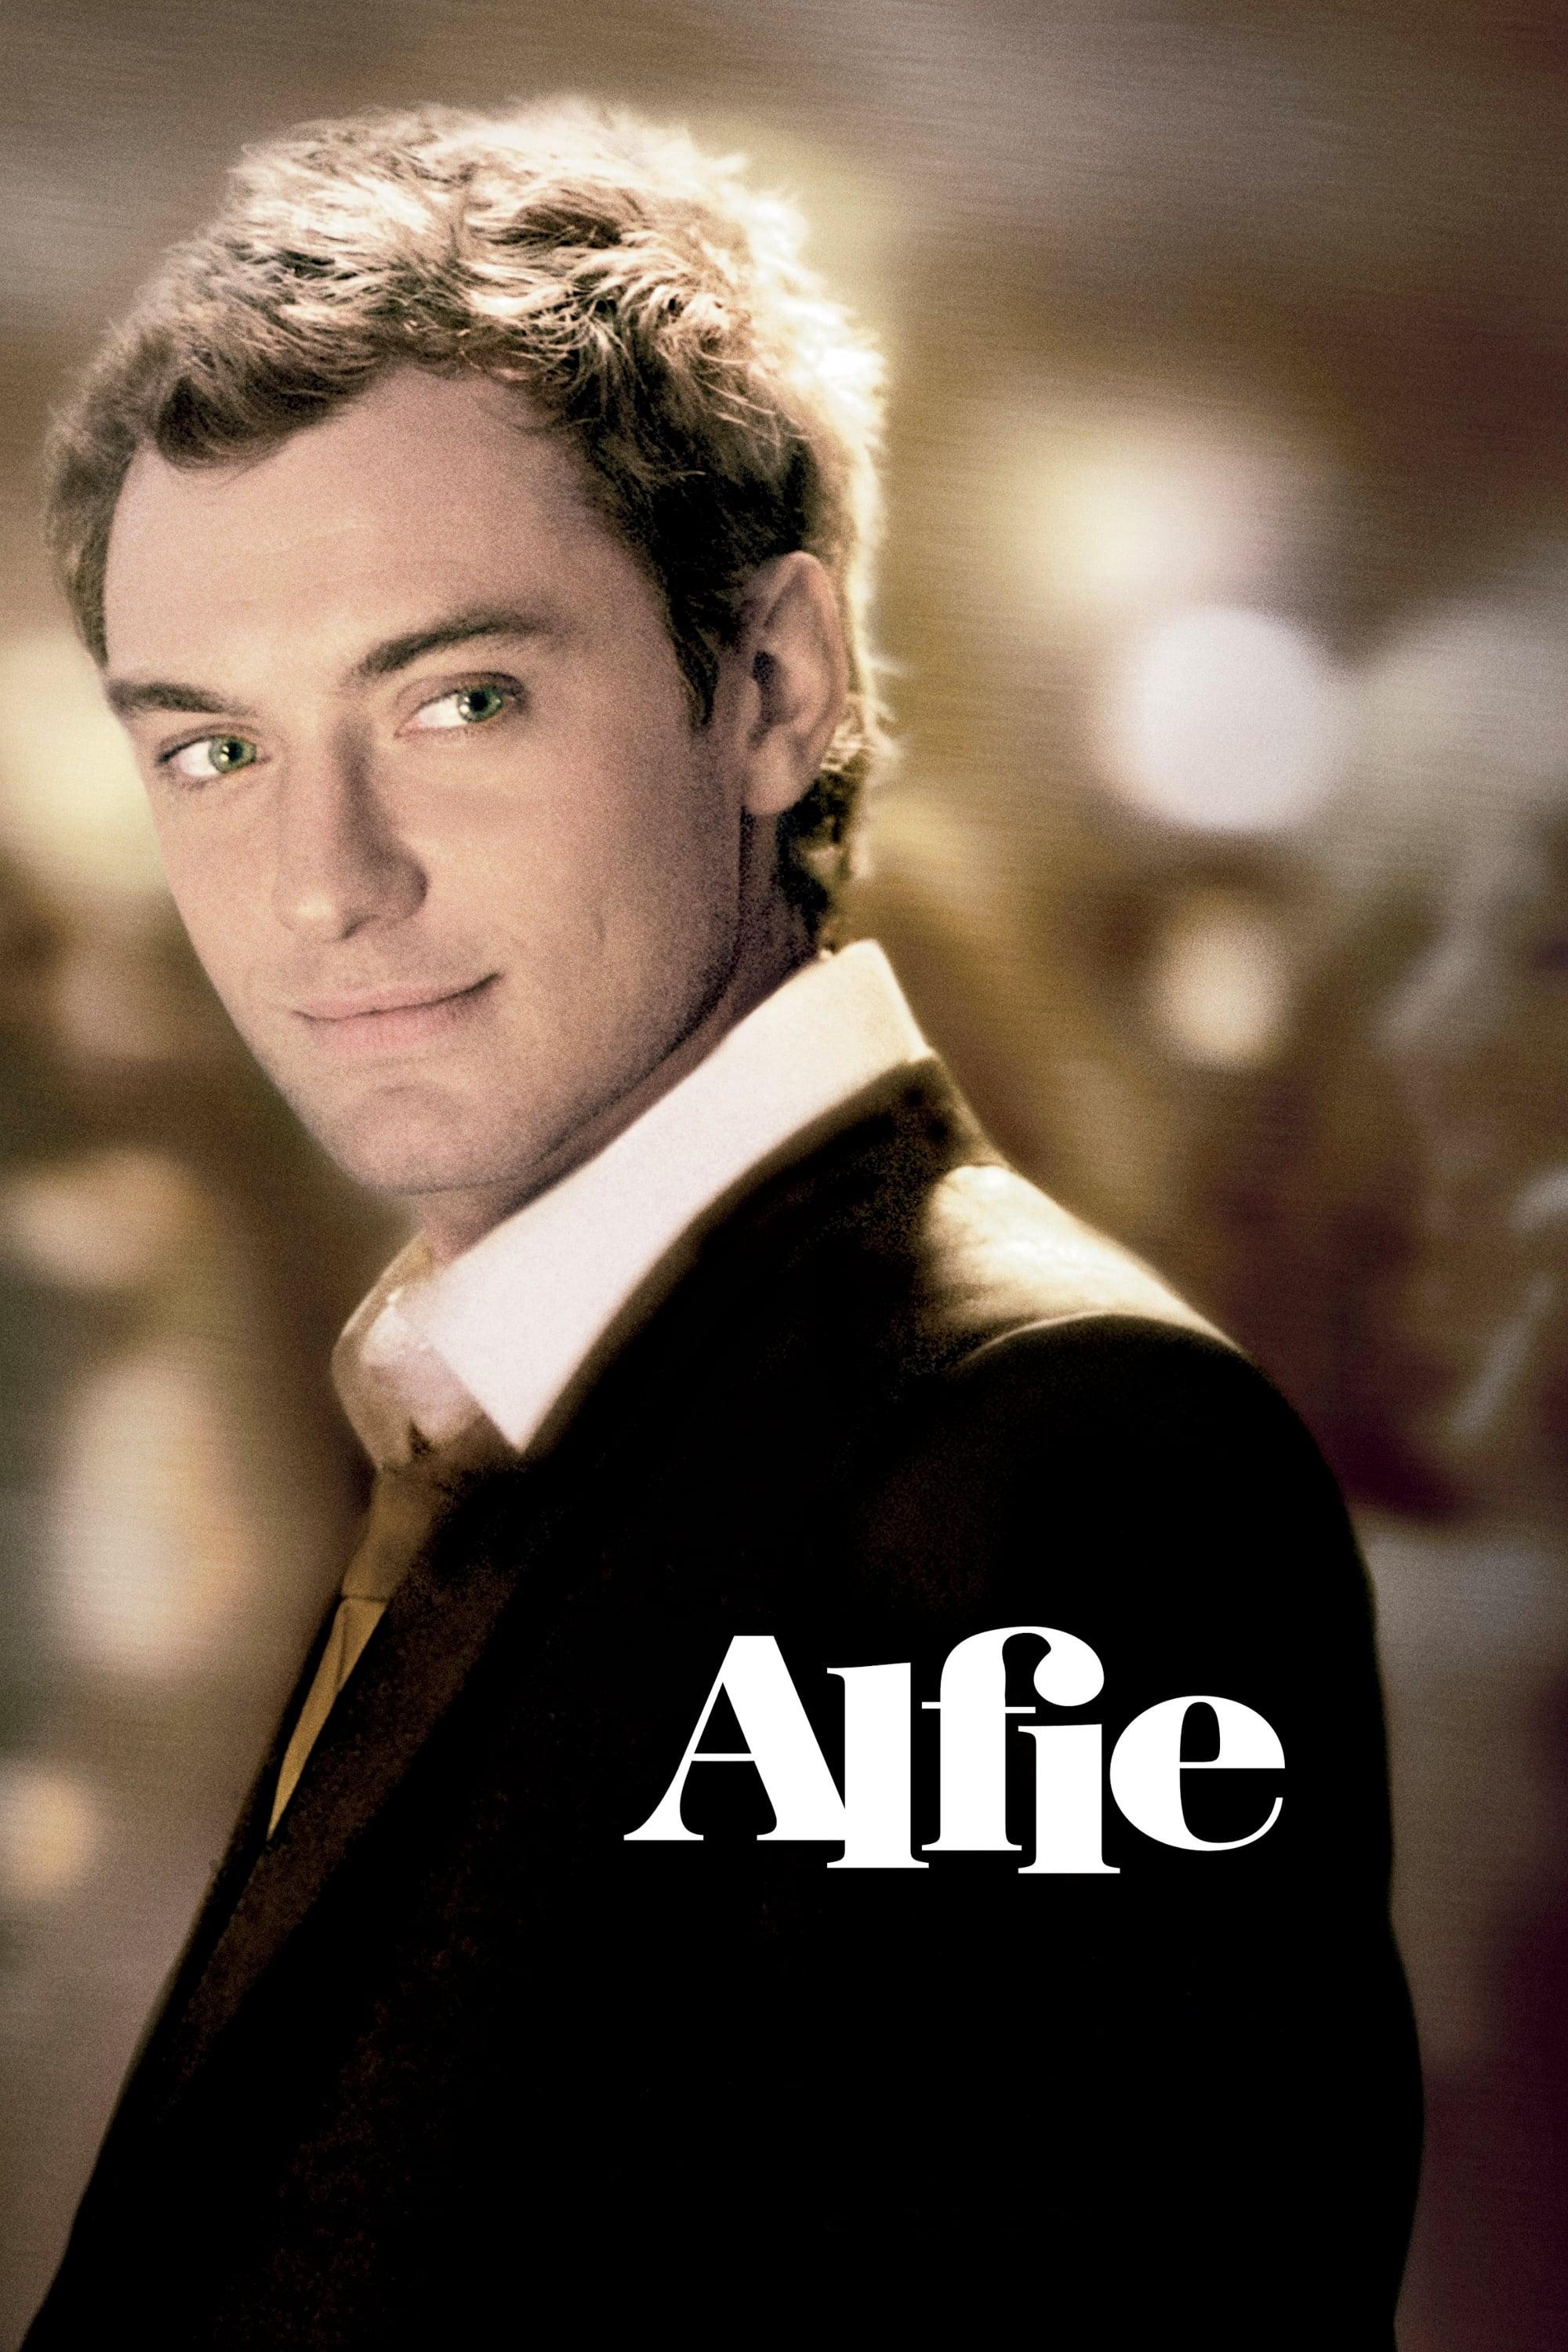 Alfie poster